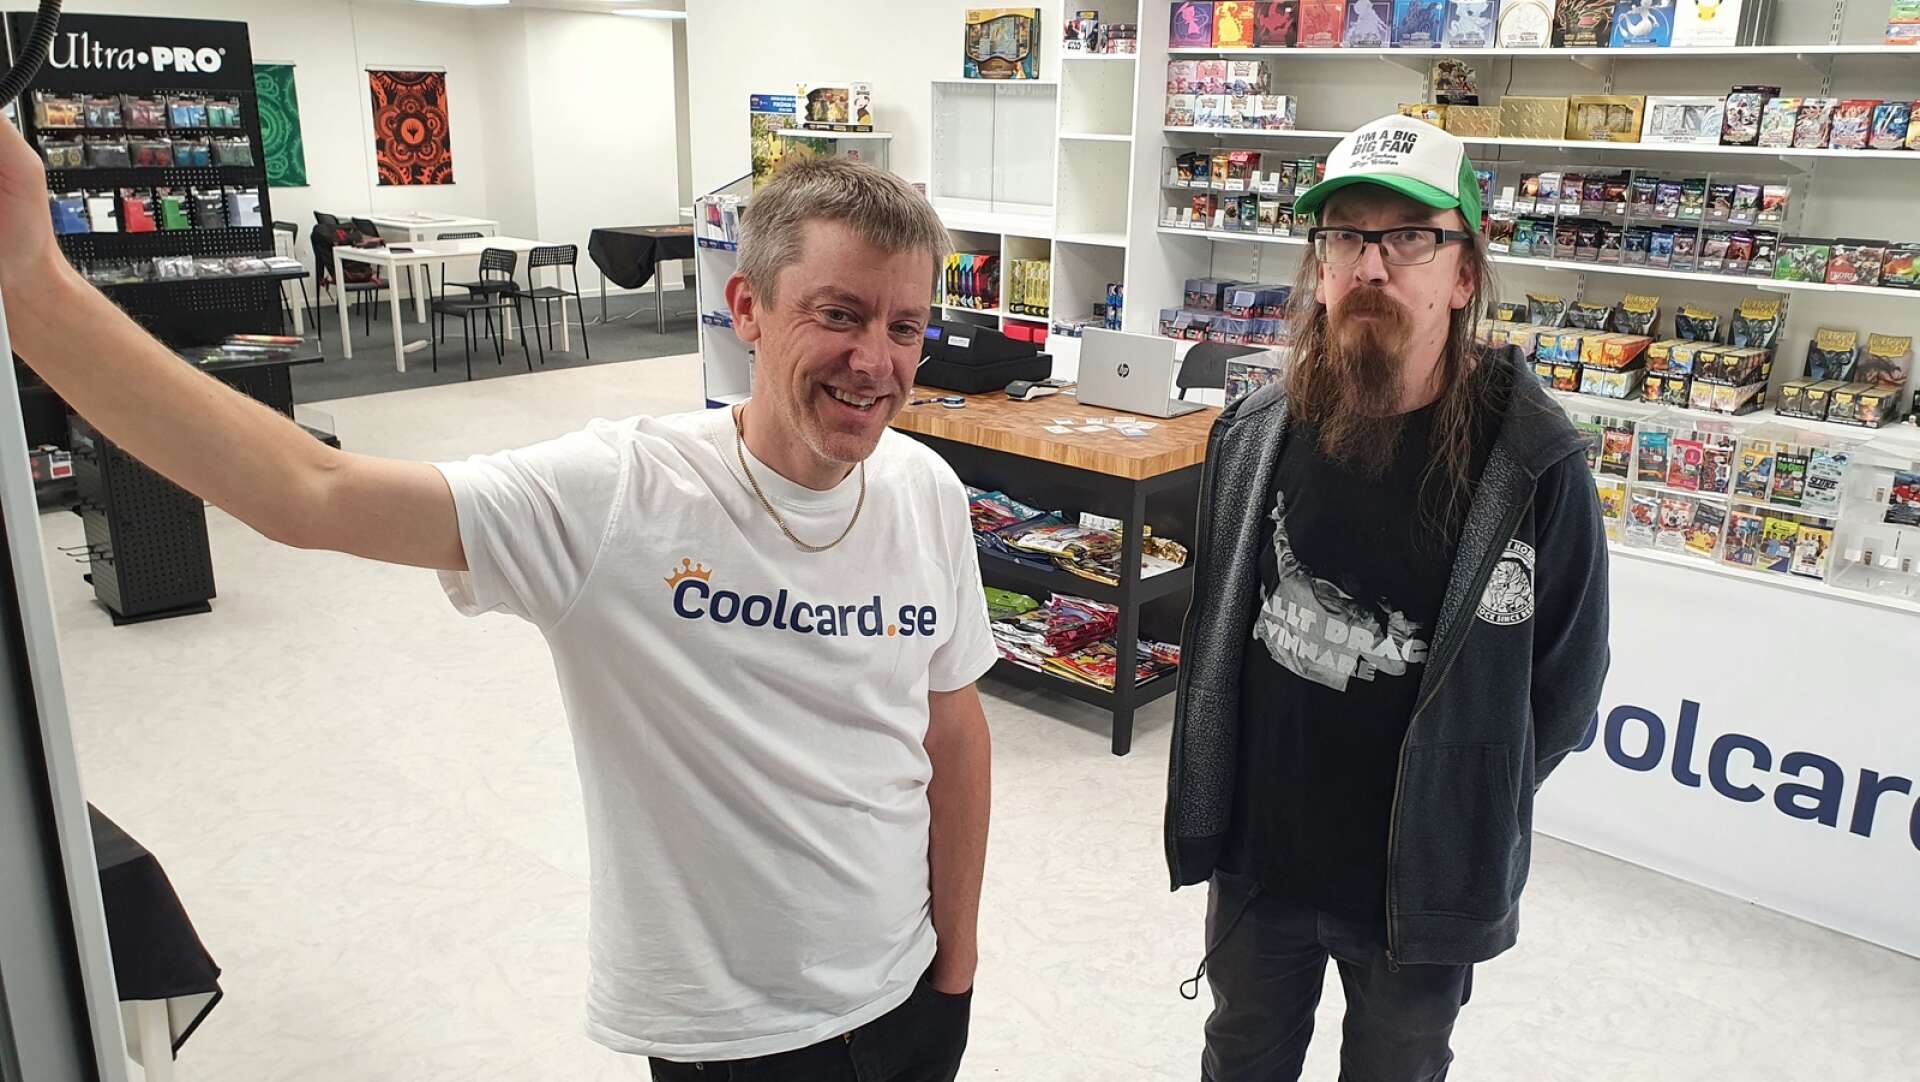 Anders Neiker och Fredrik Otter som driver Coolcard flyttade in i sin nya butikslokal på Östra Torggatan under torsdagen.